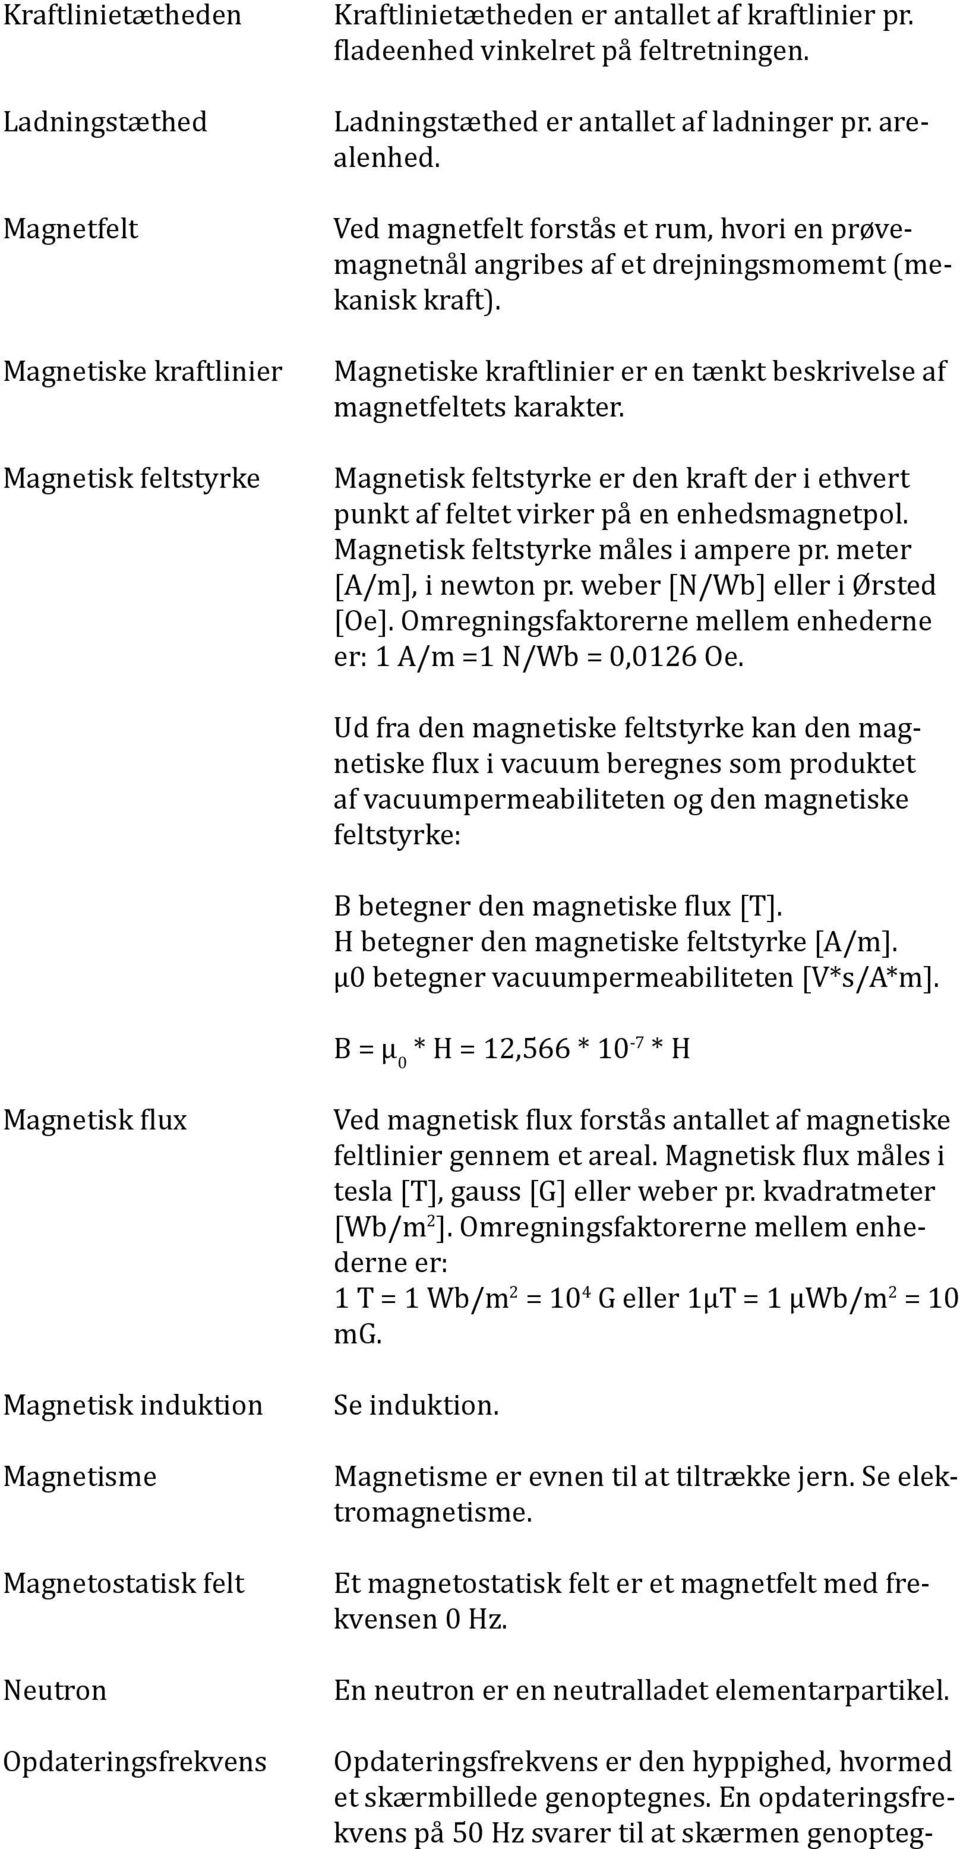 Magnetiske kraftlinier er en tænkt beskrivelse af magnetfeltets karakter. Magnetisk feltstyrke er den kraft der i ethvert punkt af feltet virker på en enhedsmagnetpol.